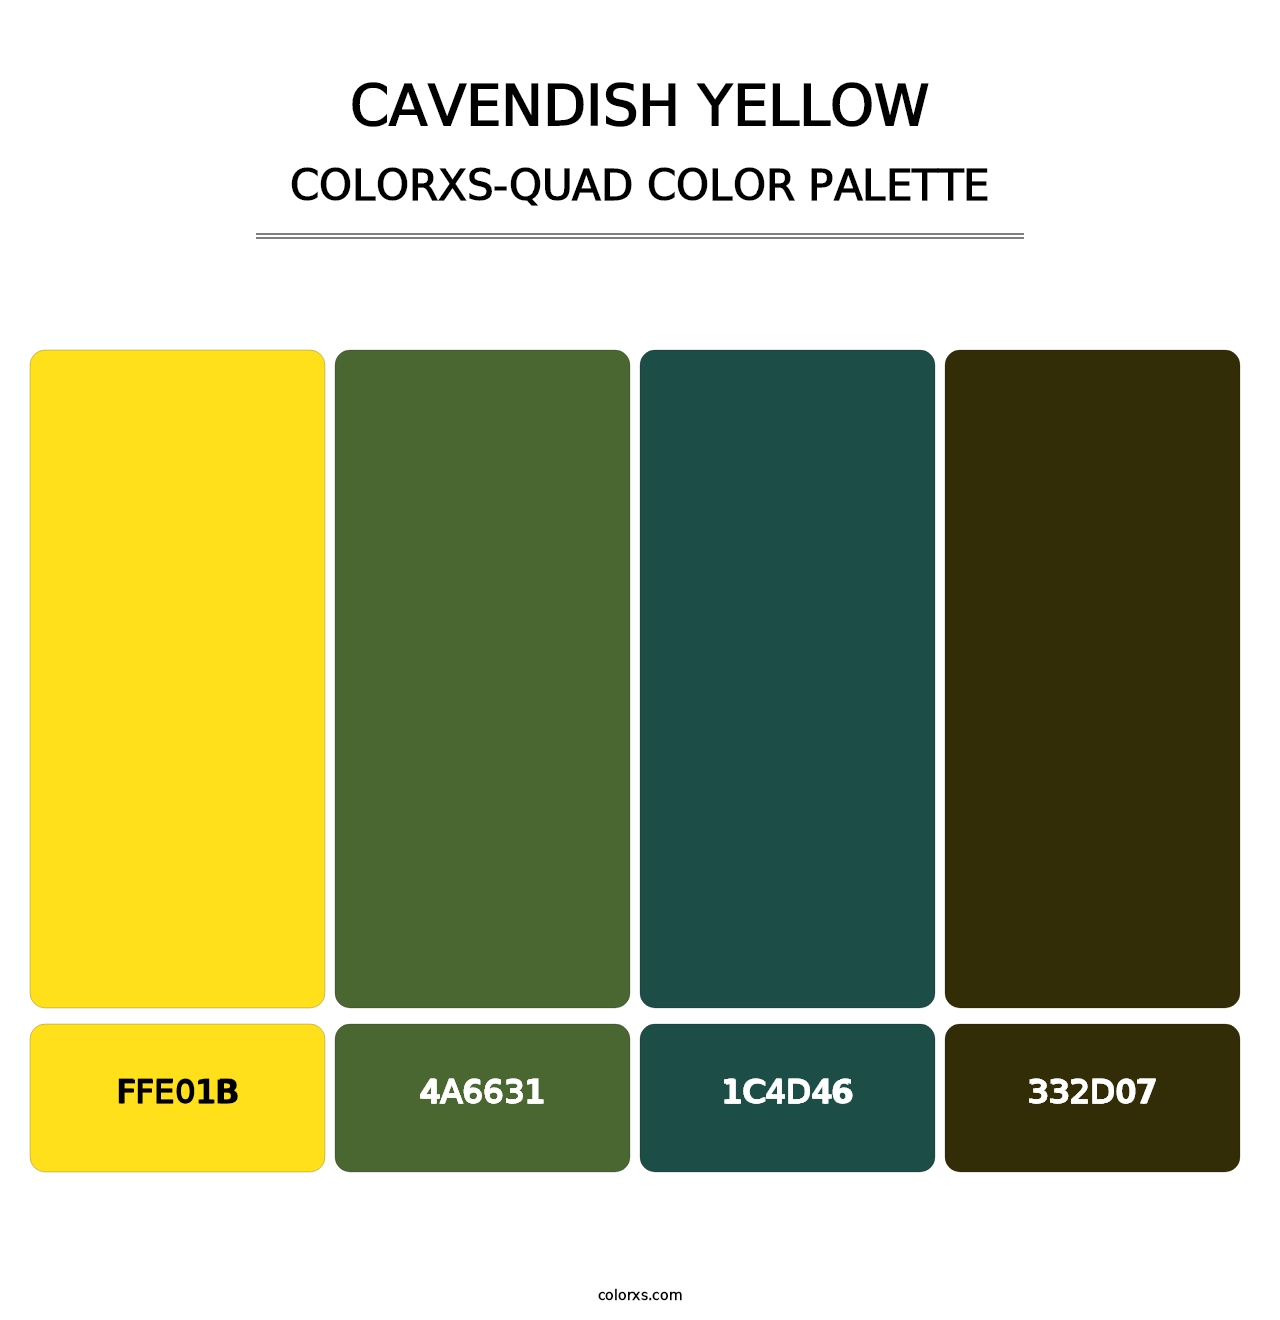 Cavendish Yellow - Colorxs Quad Palette